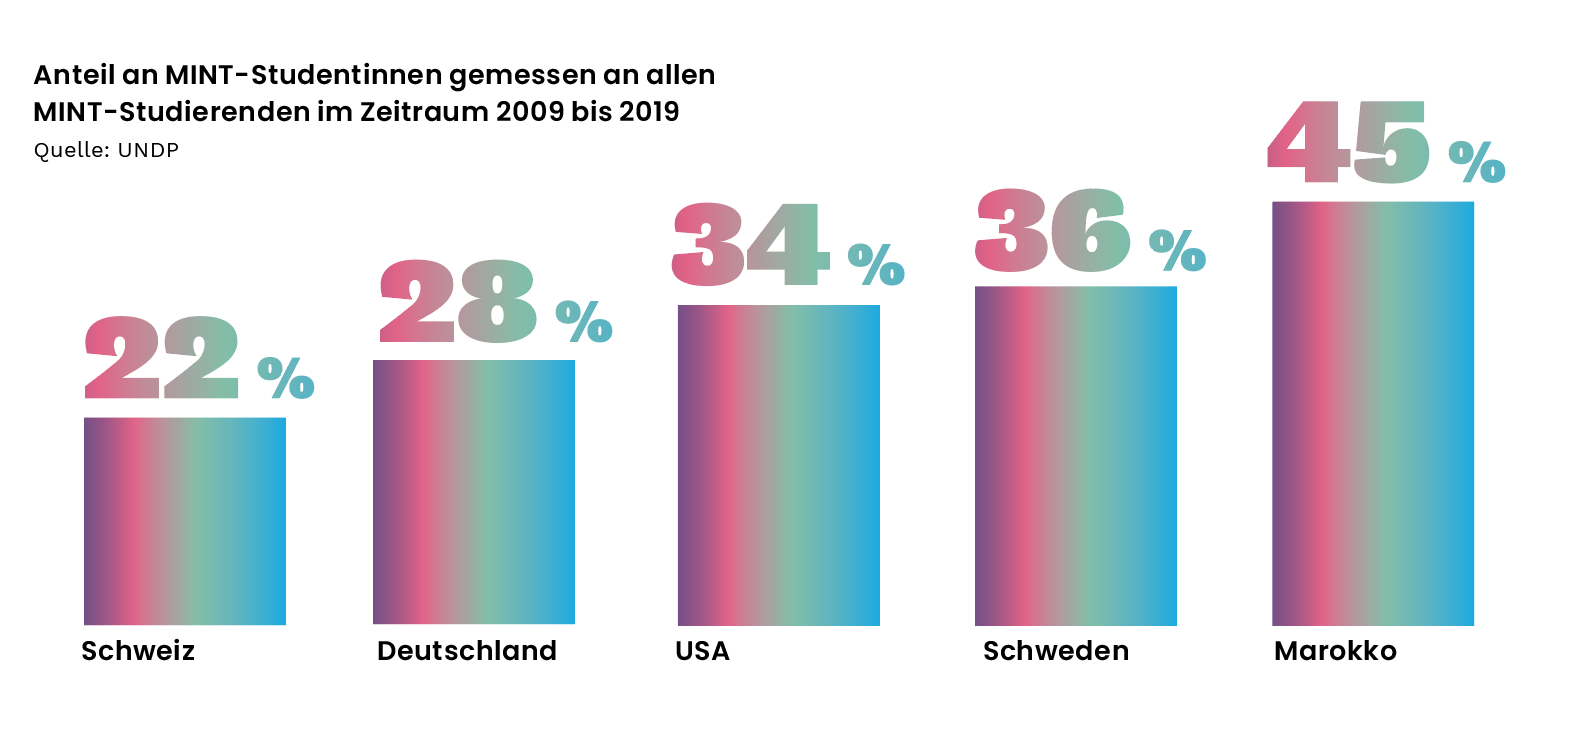 Anteil an MINT-Studentinnen gemessen an allen MINT-Studierenden im Zeitraum 2009 bis 2019: Schweiz: 22 Prozent, Deutschland: 28 Prozent, USA: 34 Prozent, Schweden 36 Prozent, Marokko 45 Prozent.